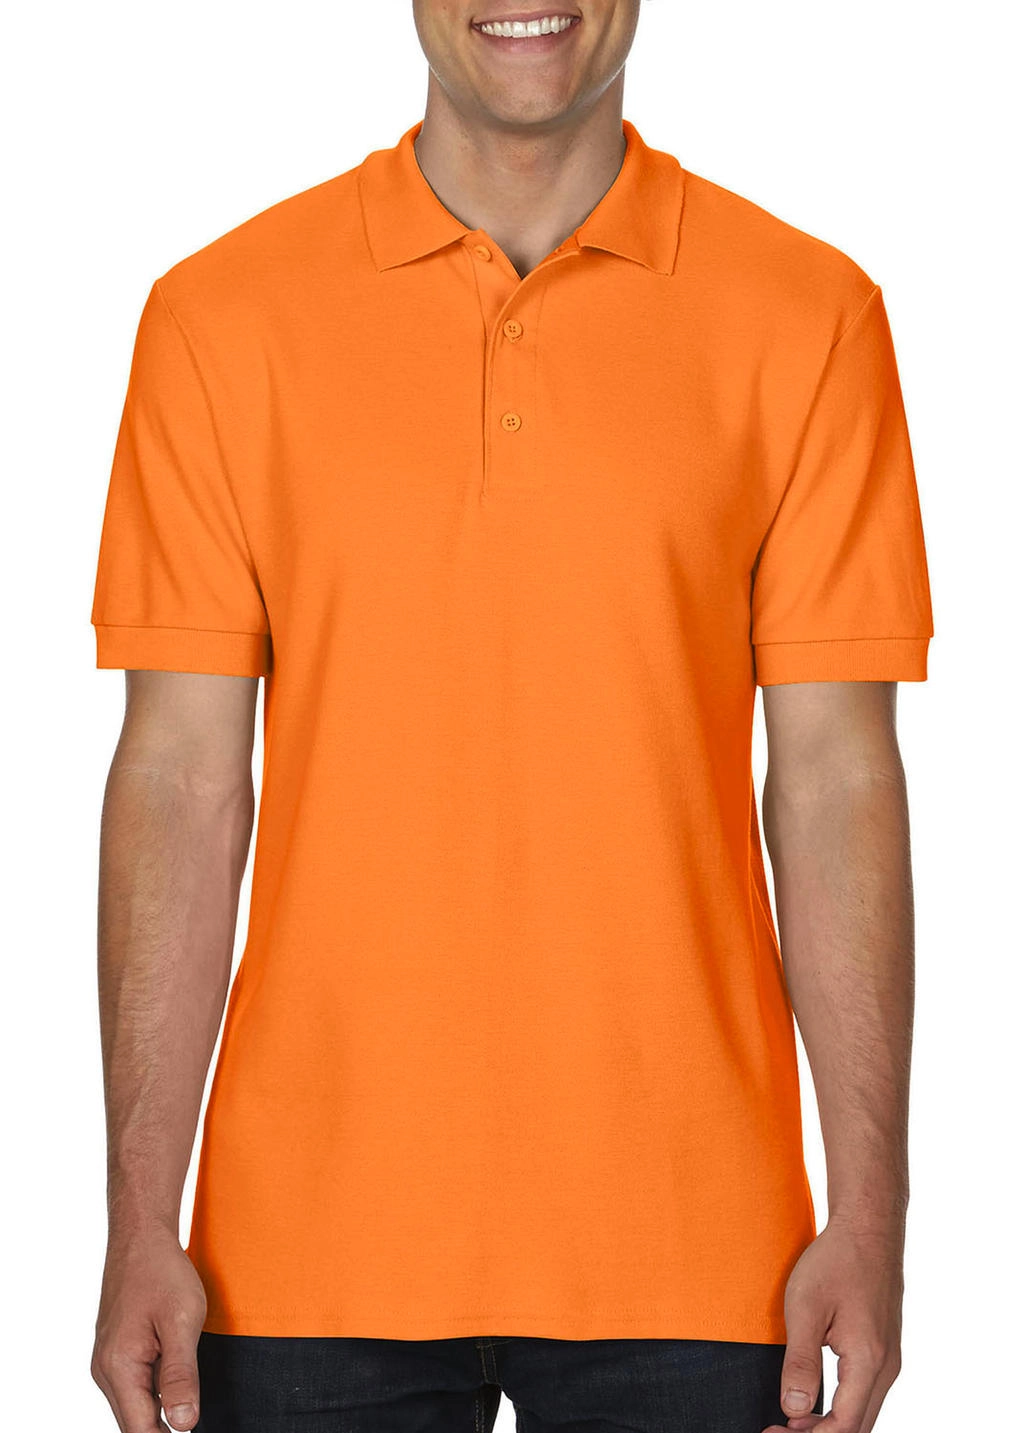 Premium Cotton Double Piqué Polo zum Besticken und Bedrucken in der Farbe Tangerine mit Ihren Logo, Schriftzug oder Motiv.